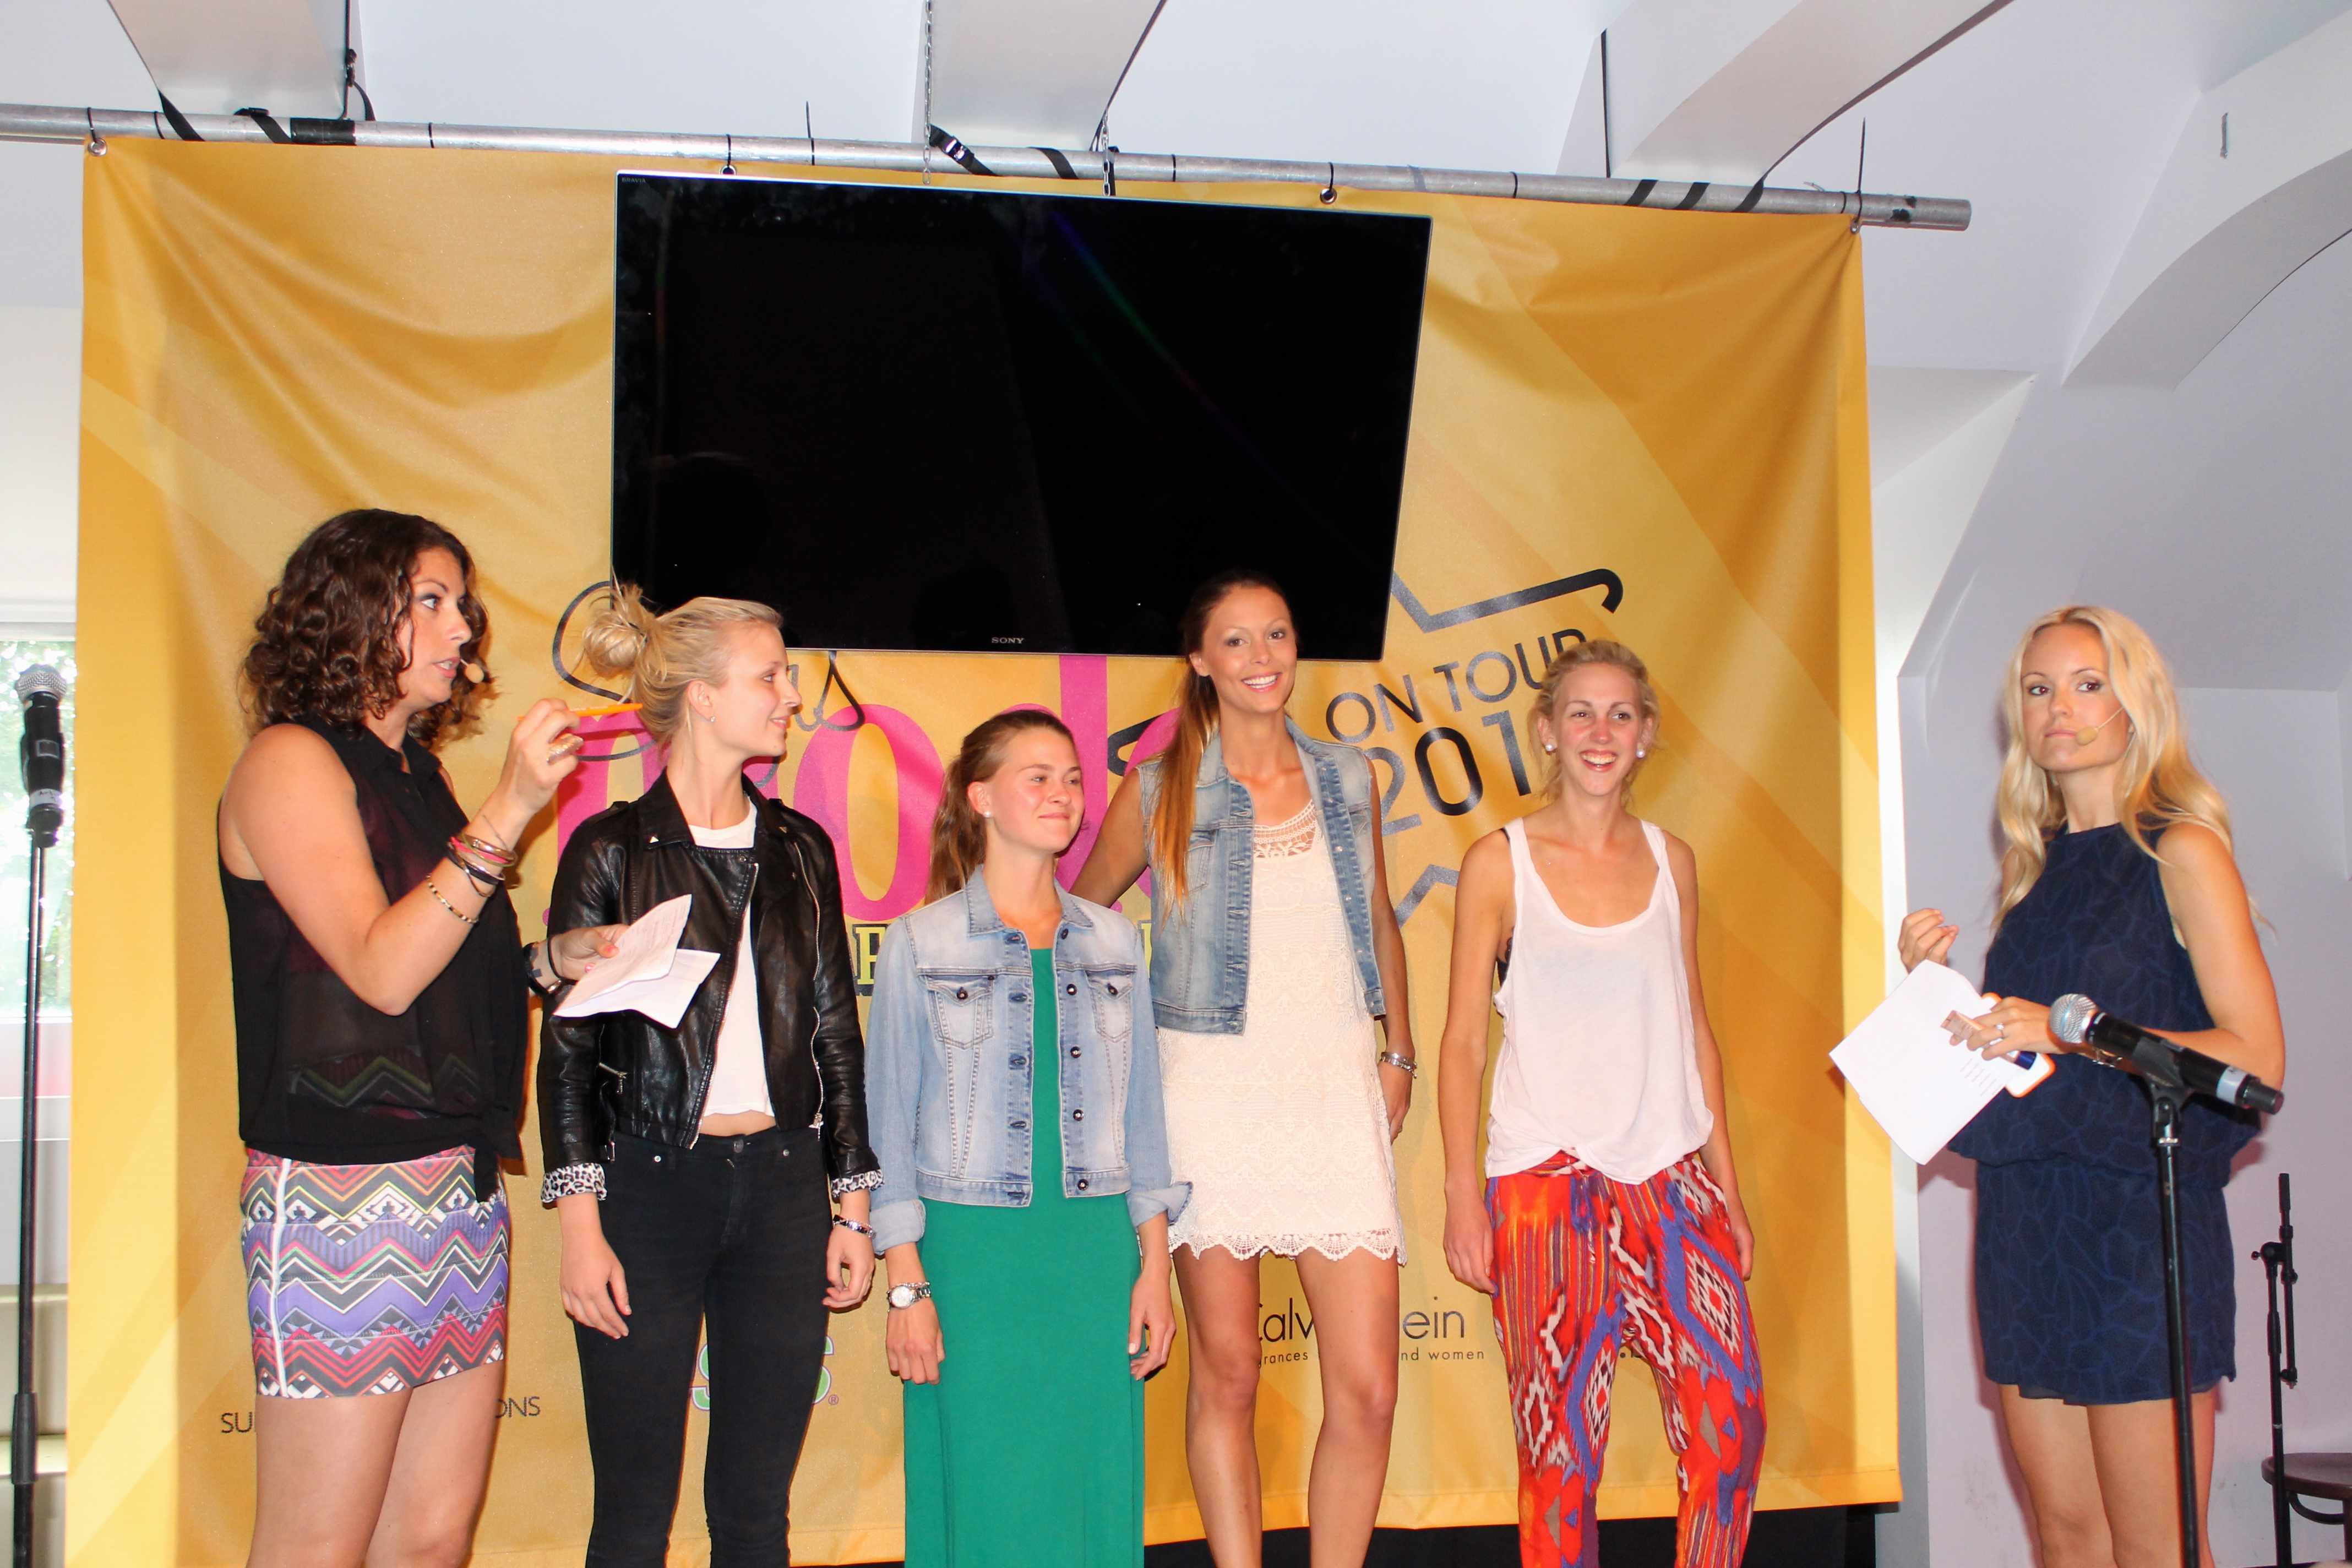 Modeexperten har sitt årliga event "Girls night by Sofis mode" i Båstad.